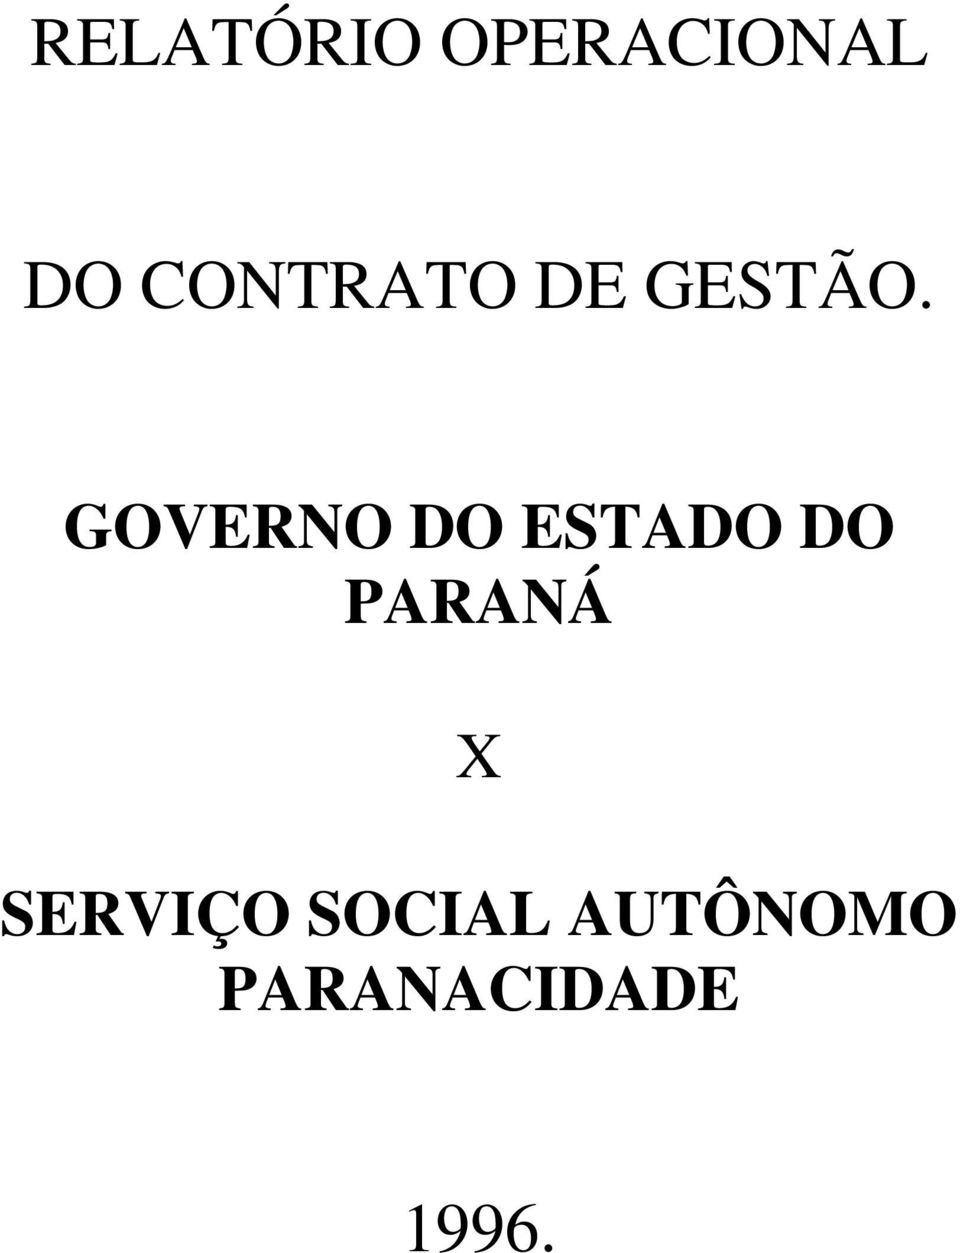 GOVERNO DO ESTADO DO PARANÁ